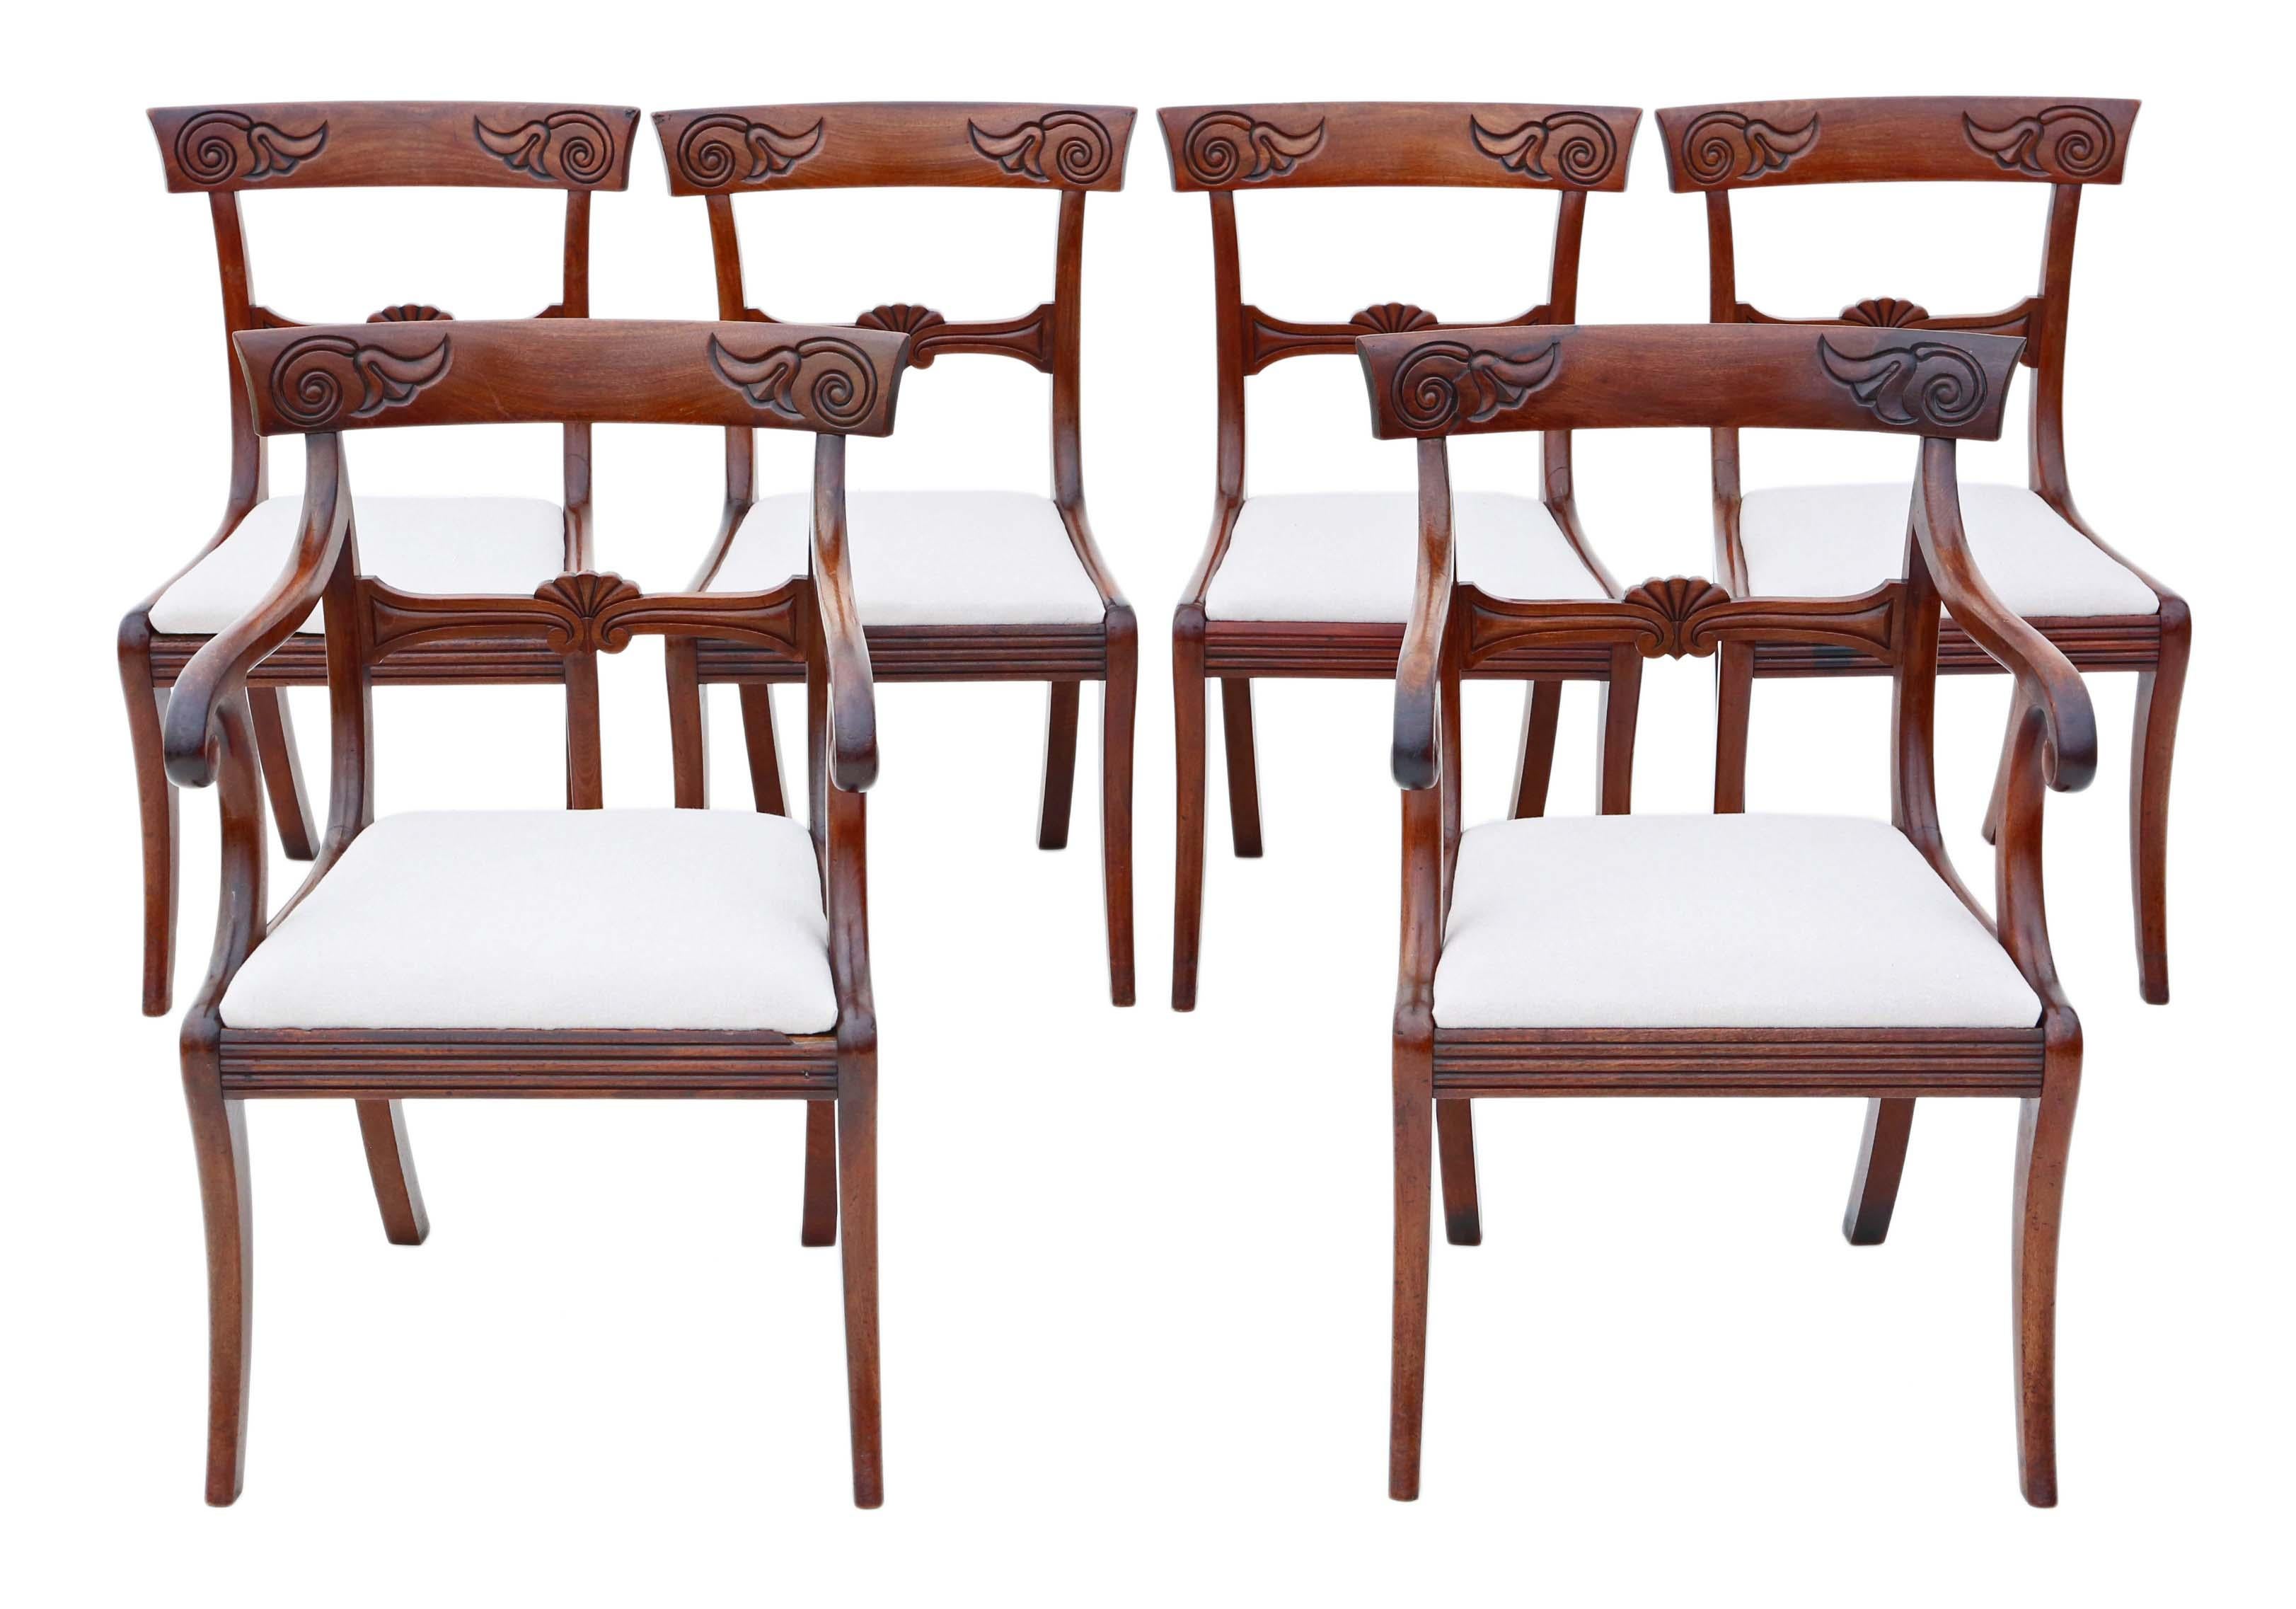 Genießen Sie den exquisiten Charme dieses hochwertigen Satzes von 6 (4 + 2) Regency-Esszimmerstühlen aus kubanischem Mahagoni aus dem 19. Jahrhundert, um 1825. Diese seltenen und wirklich besonderen Stühle strahlen Eleganz und Raffinesse aus.

Jeder